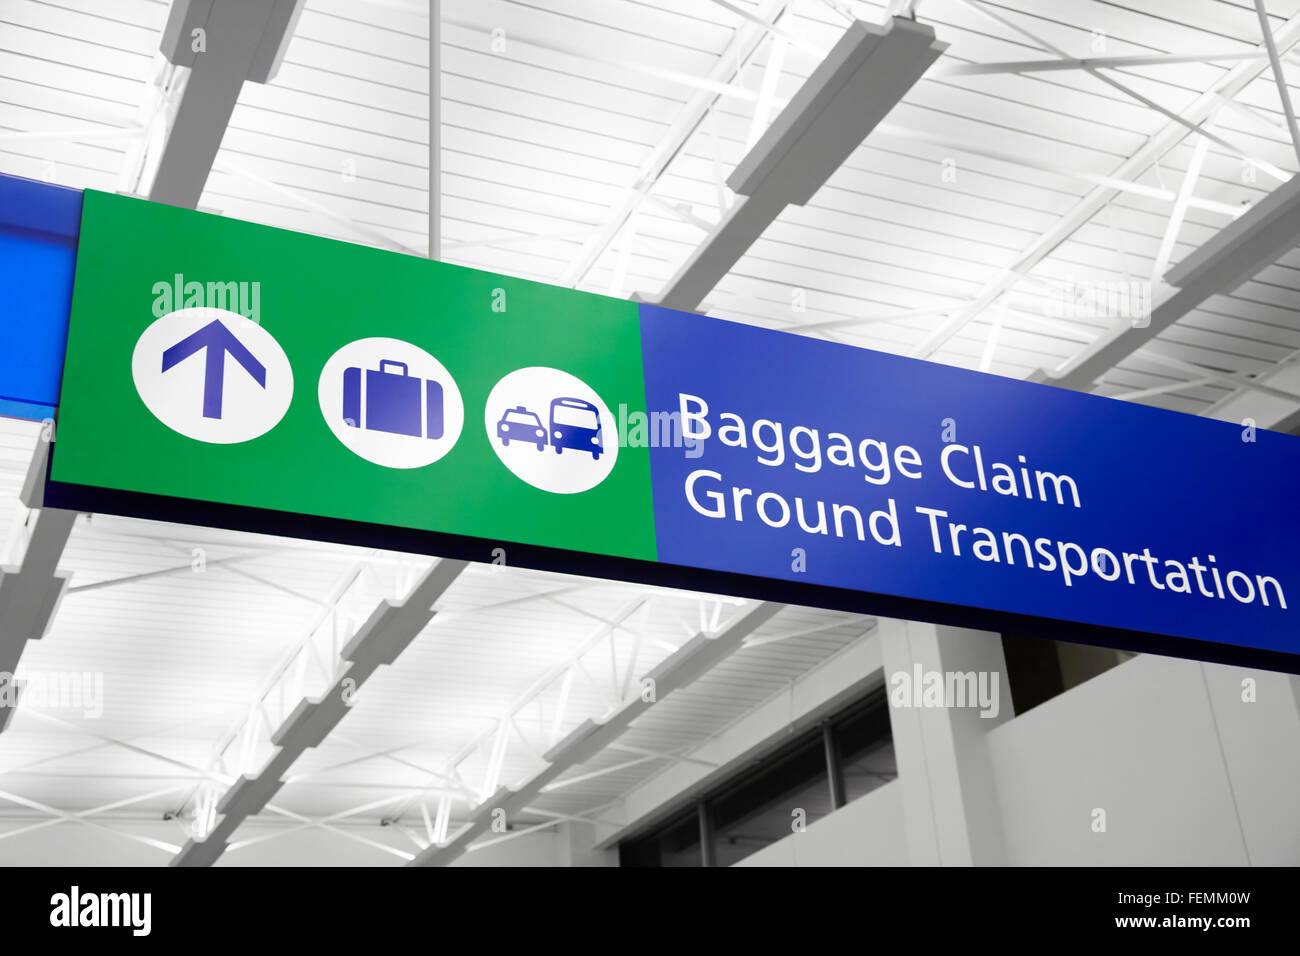 Aeroporto di reclamo per il bagaglio e di trasporto a terra segno con la valigia, bus e taxi i simboli. Segno è blu e verde. Foto Stock